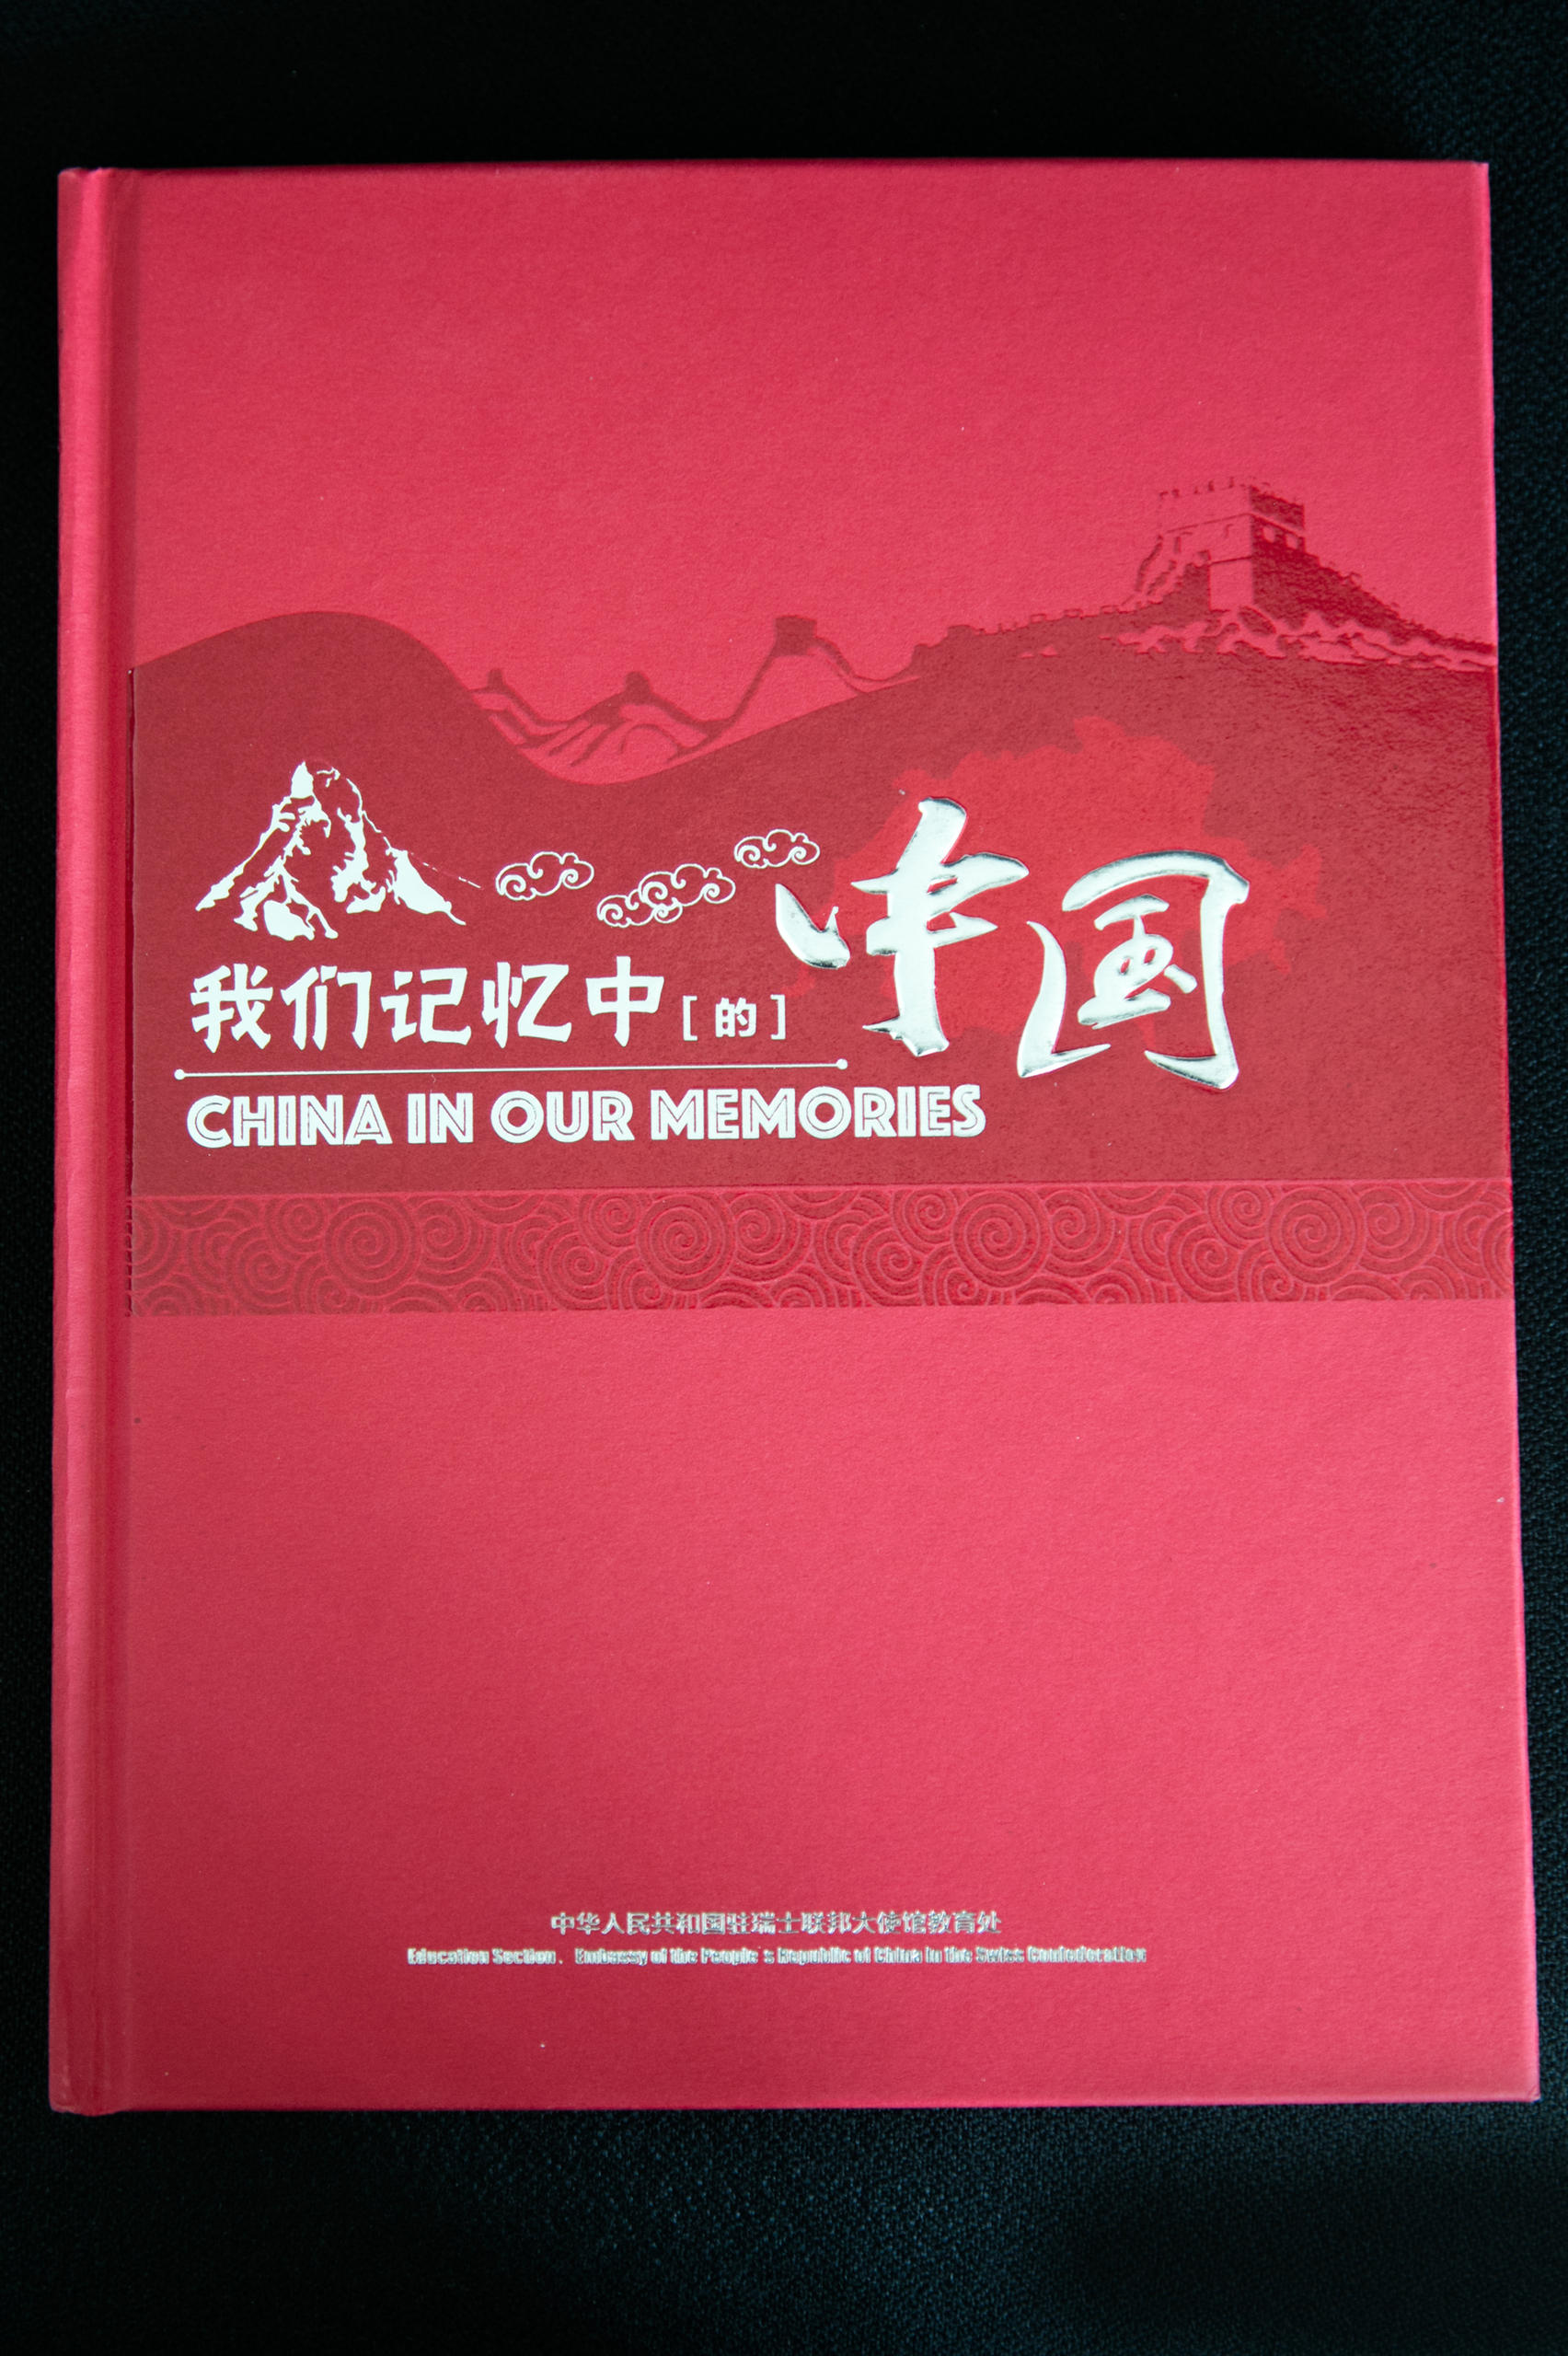 《我们记忆中的中国》瑞士留华校友纪念册样书